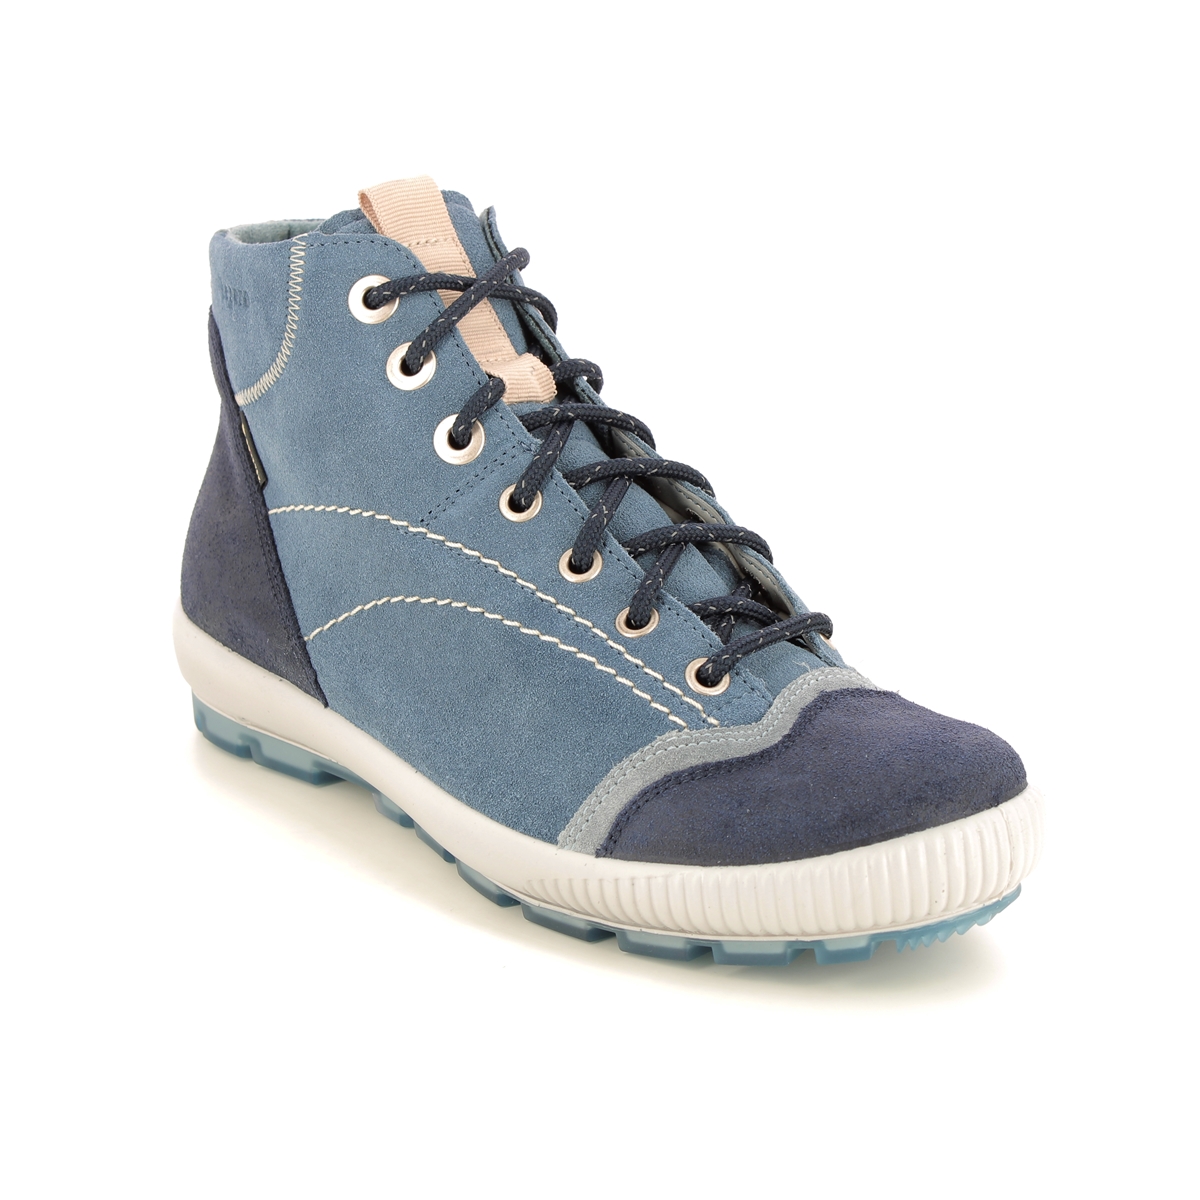 Legero Tanaro Gtx Trek Blue Suede Womens Walking Boots 2000123-8620 In Size 6.5 In Plain Blue Suede